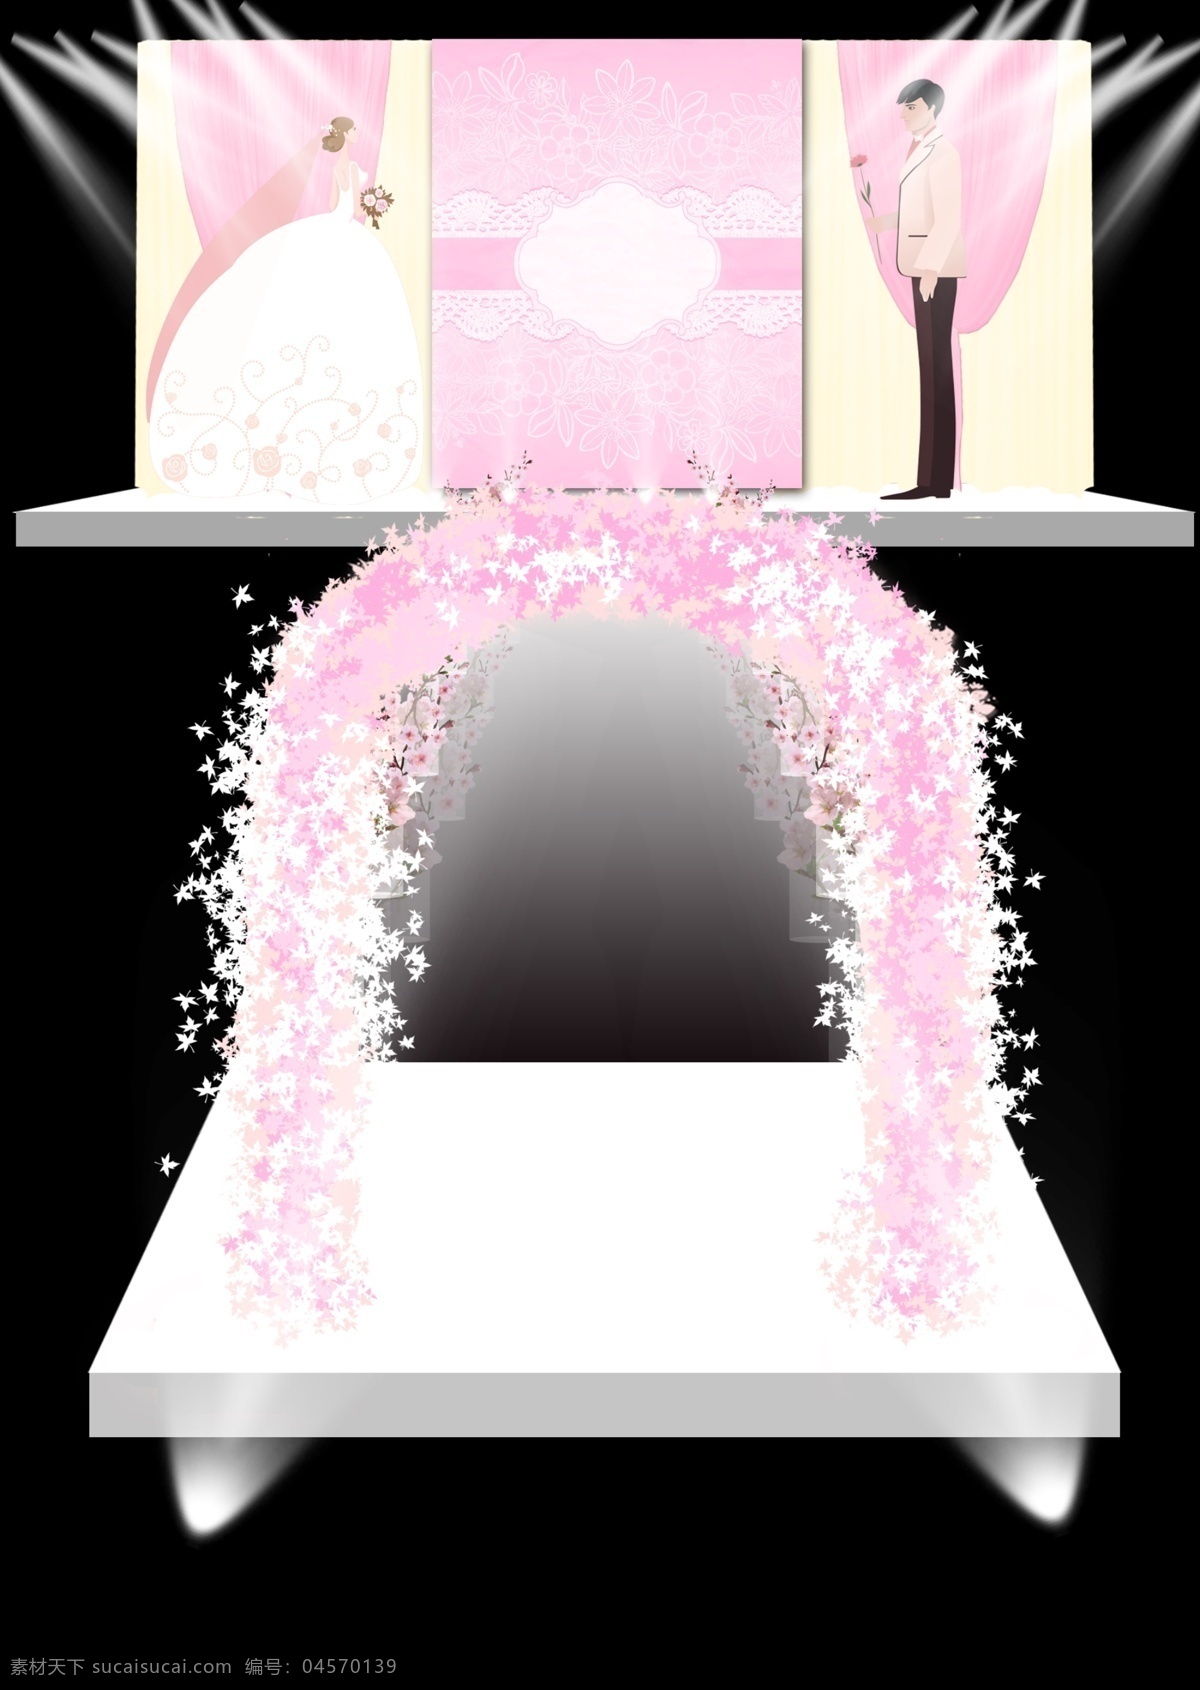 婚礼效果图 婚礼仪式区 粉色拱门 新郞剪影 新娘剪影 镜面 中间喷绘装饰 黑色